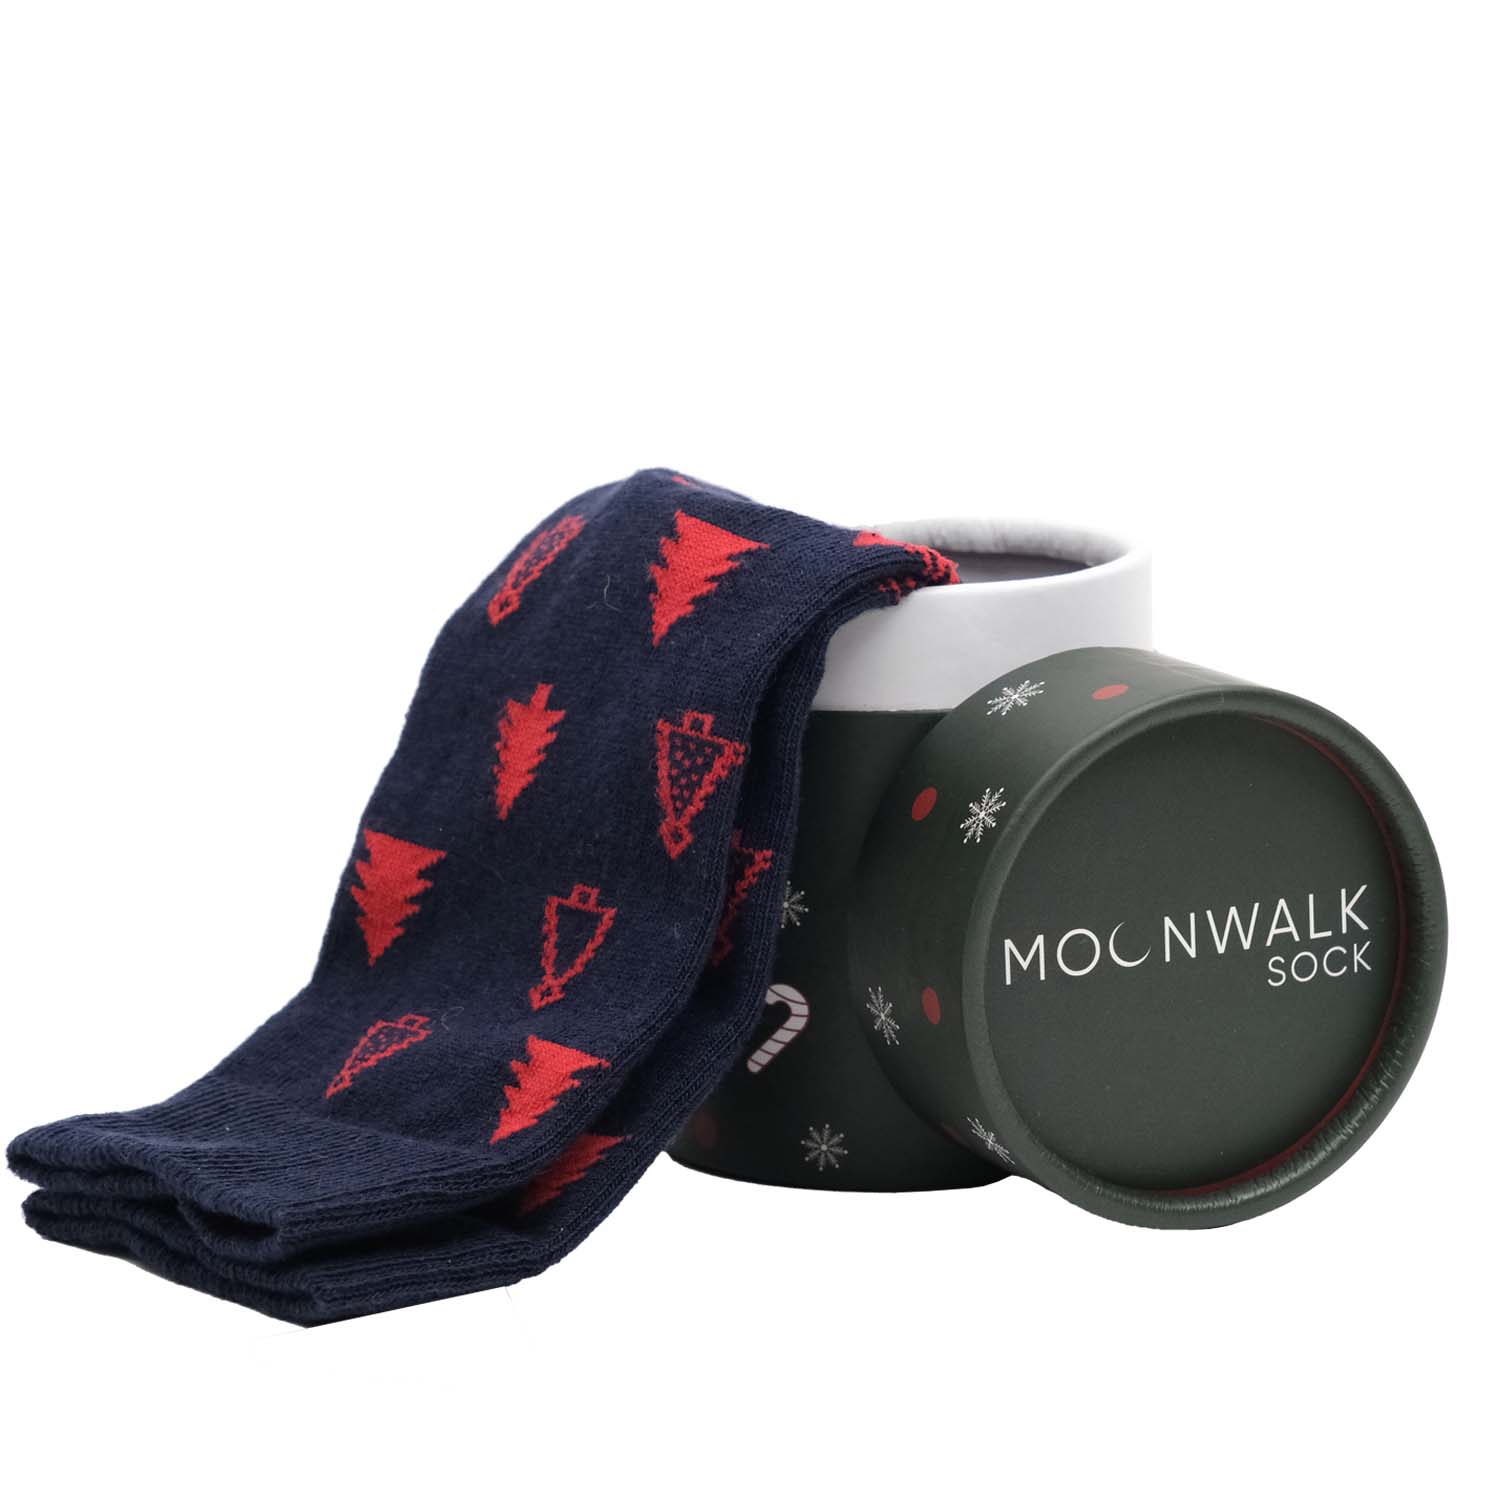 Moonwalk Sock – Lacivert Çam Ağacı Desenli Çorap